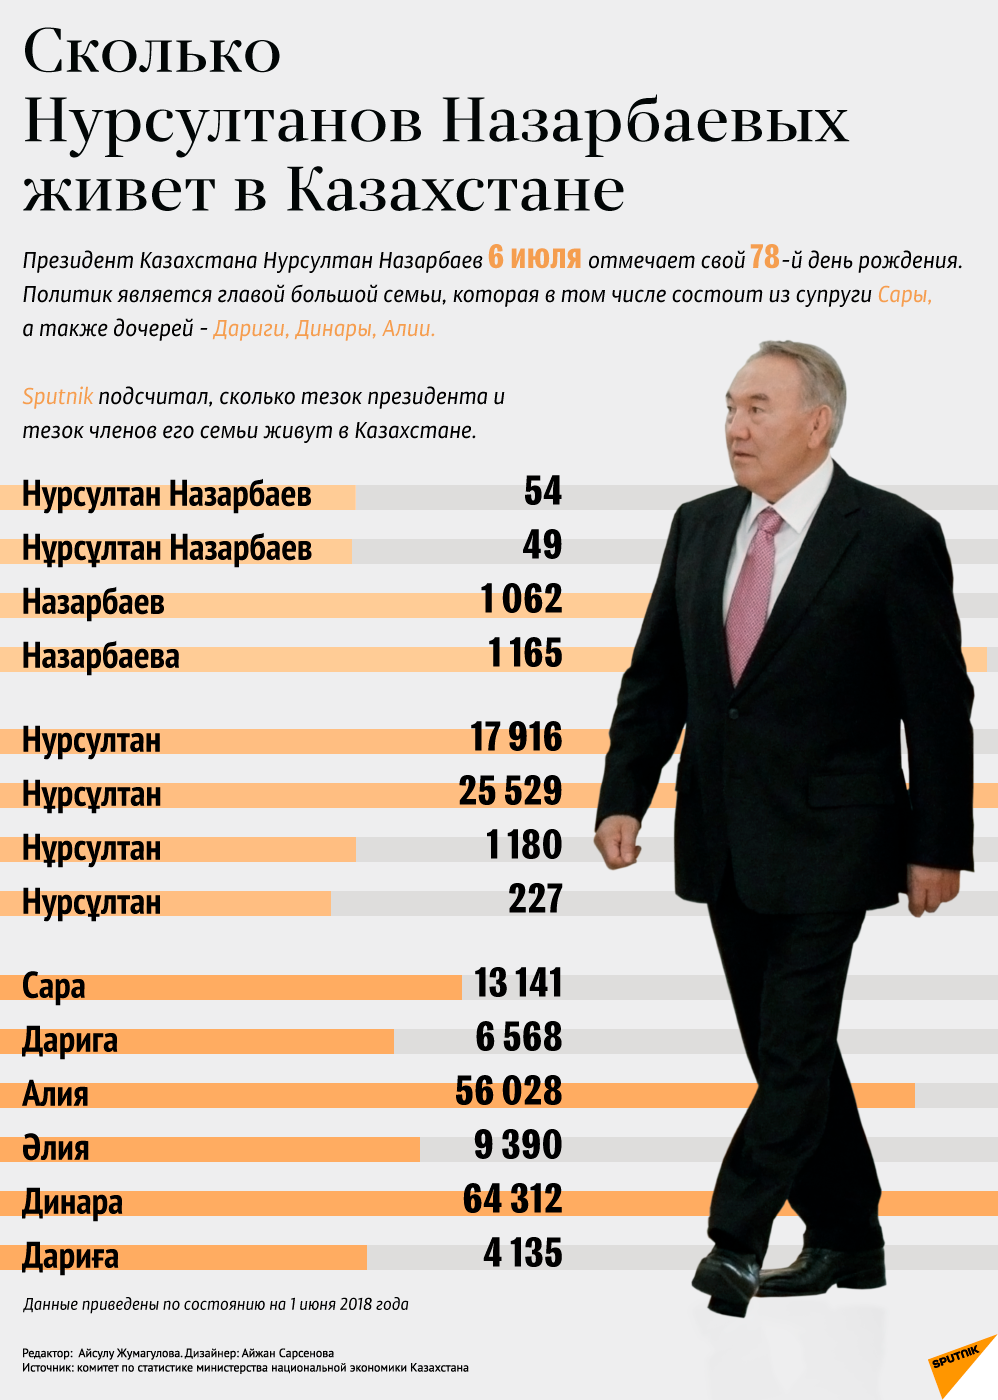 Сколько зарплата в казахстане. Зарплата президента Казахстана. Зарплата президента. Официальная зарплата президента Казахстана. Зарплата президента Казахстана в месяц.